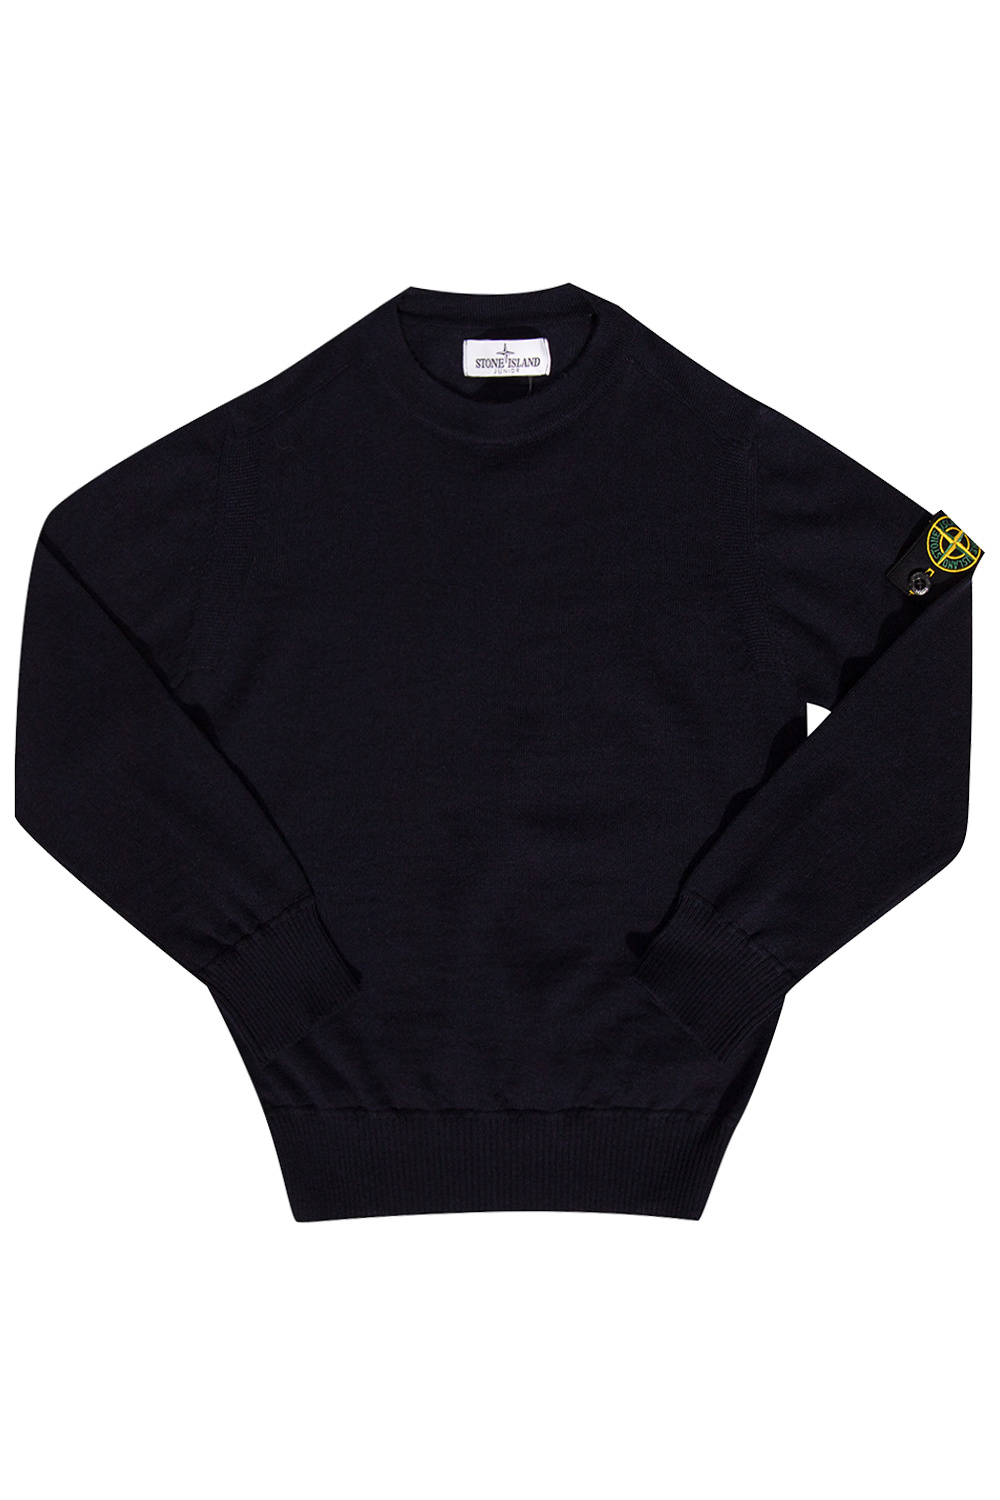 LIU JO ruffle detailing sweatshirt Wool sweater